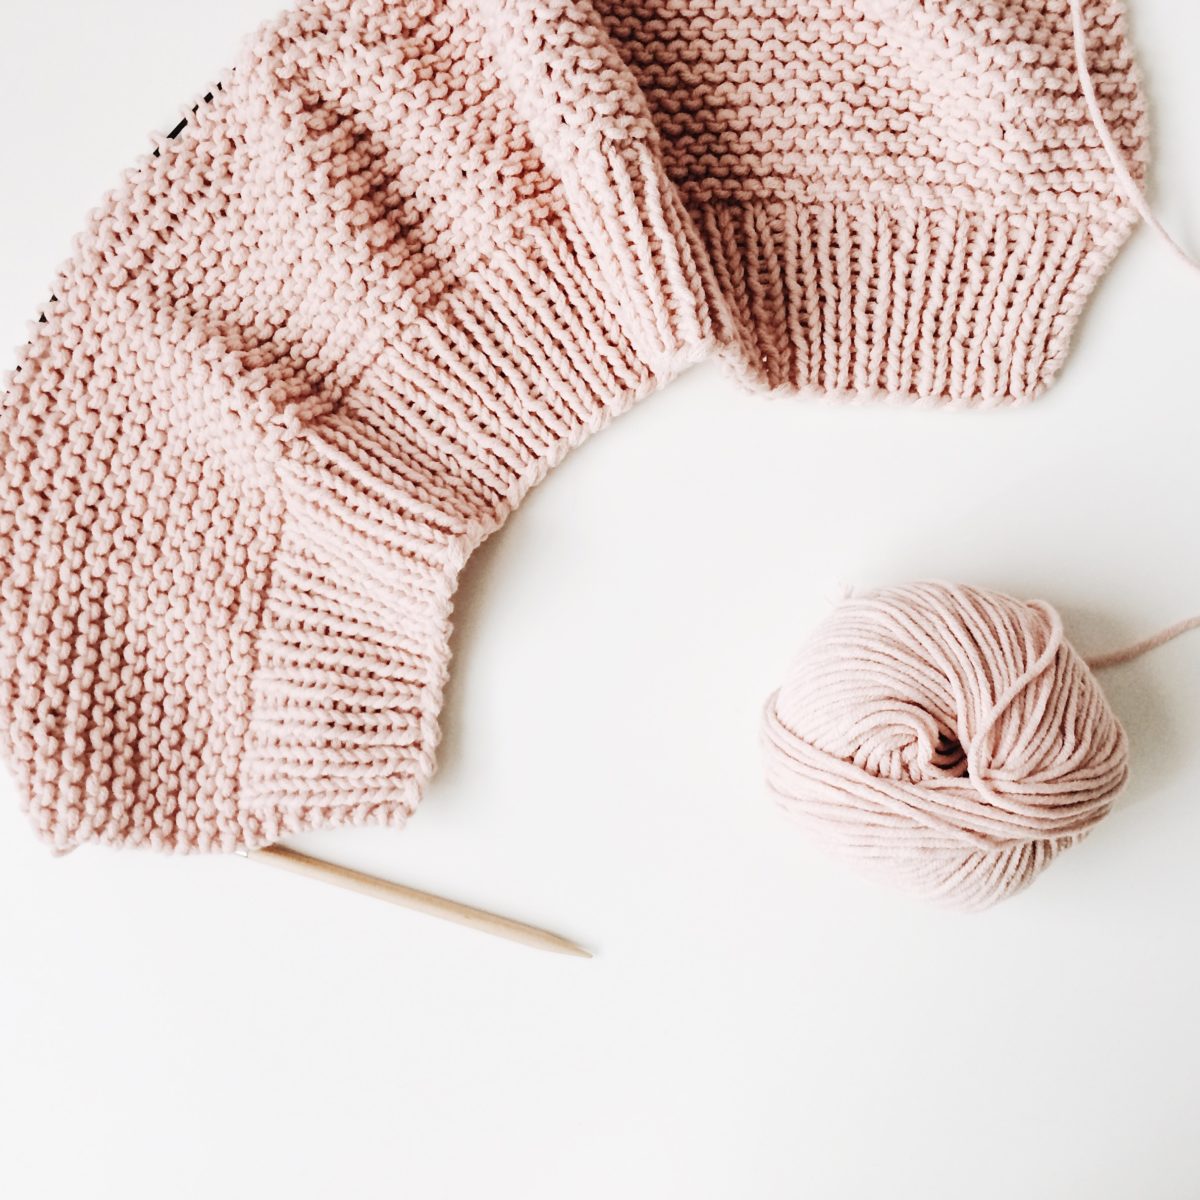 pink yarn and knitting needles